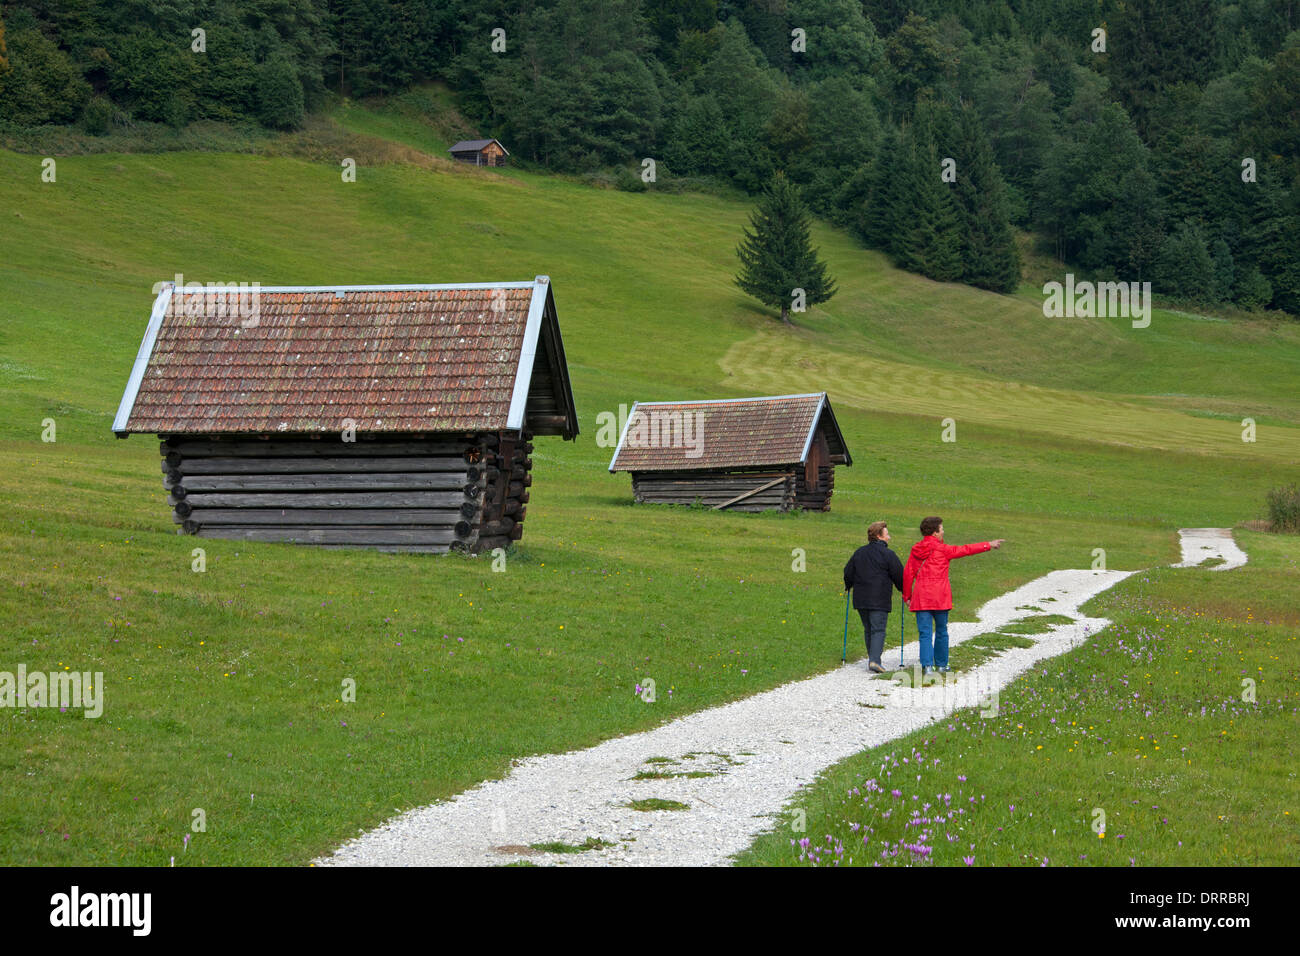 Les touristes passant par cabanes de bois / greniers le long du lac Gerold / Geroldsee près de Mittenwald, Haute-Bavière, Allemagne Banque D'Images